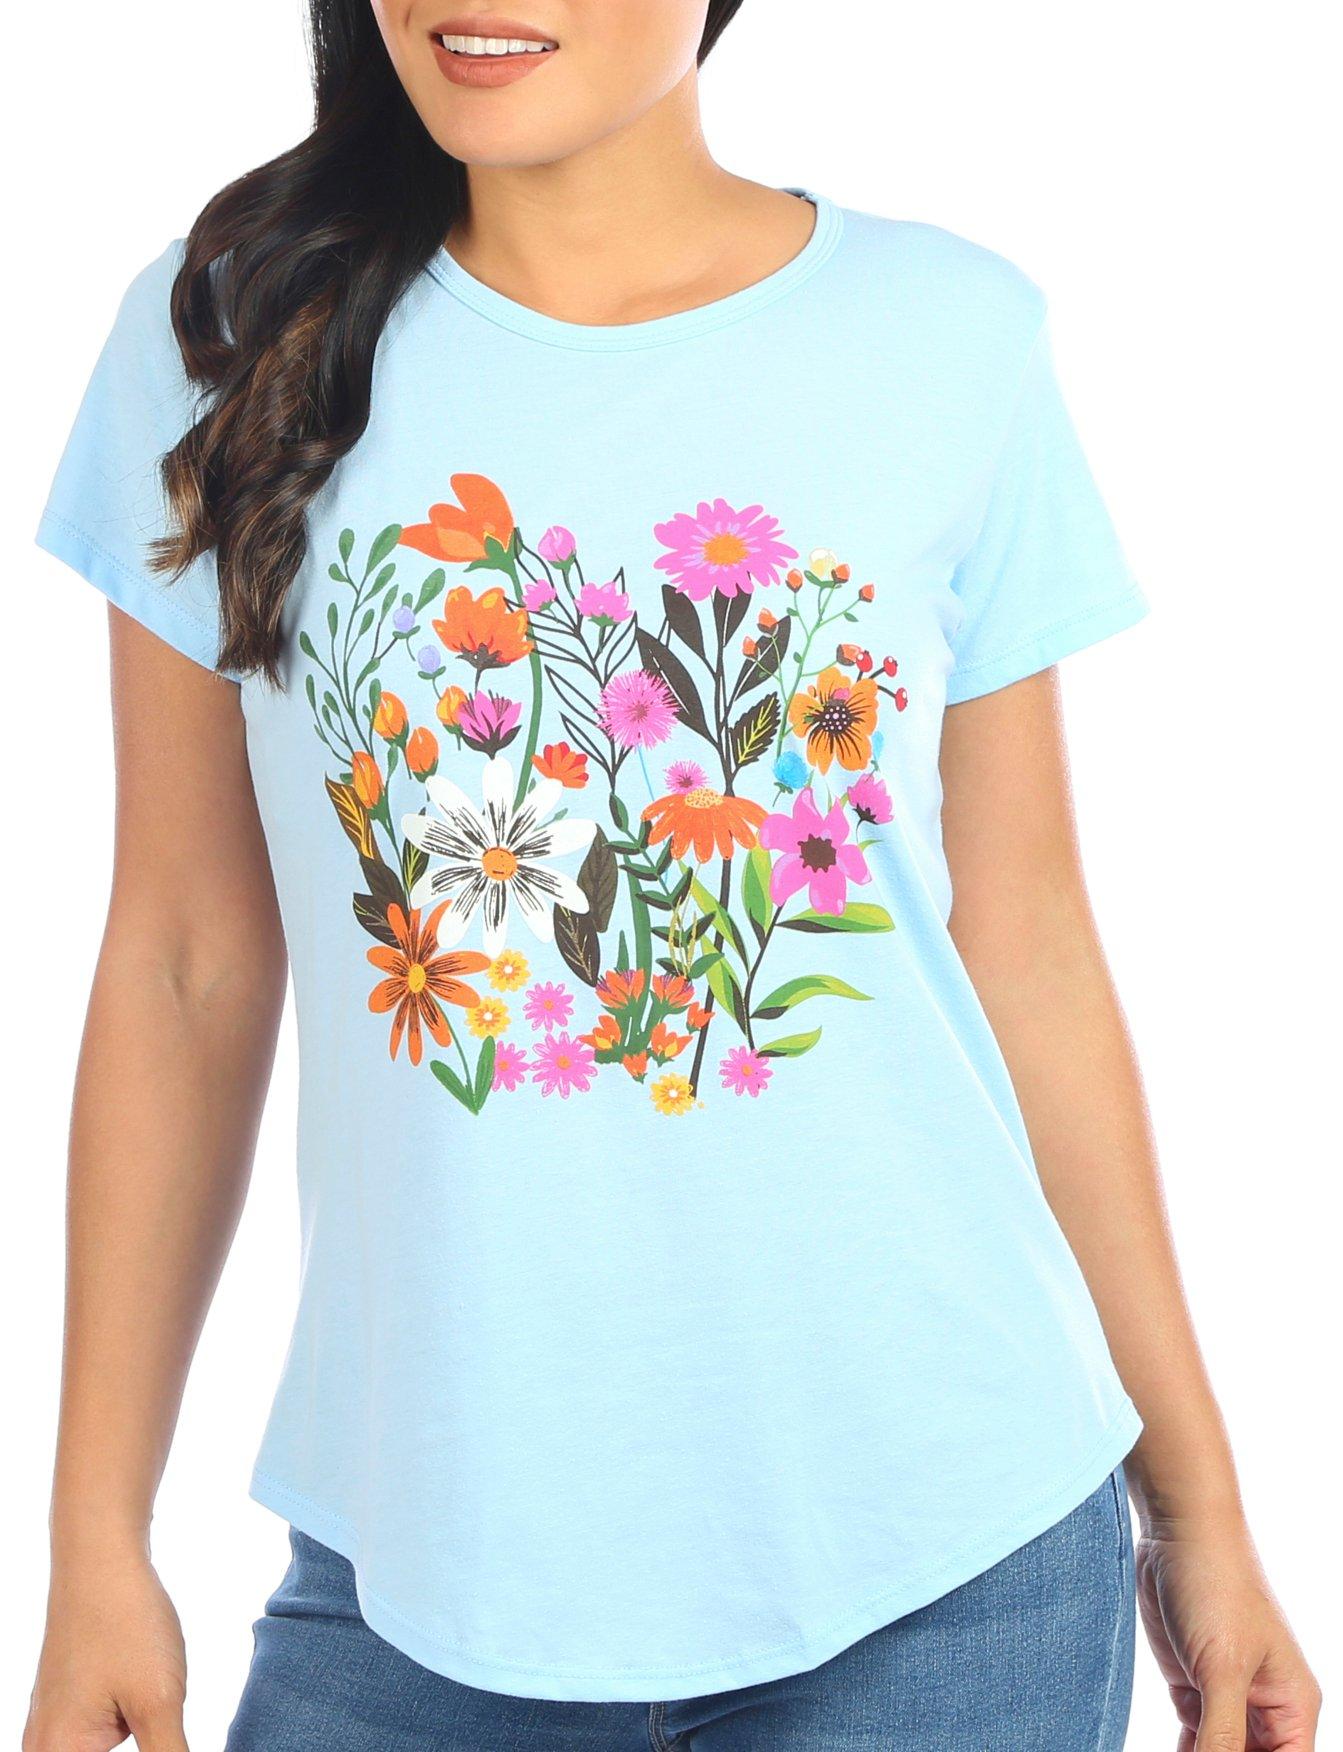 Womens Wildflowers Short Sleeve T-Shirt